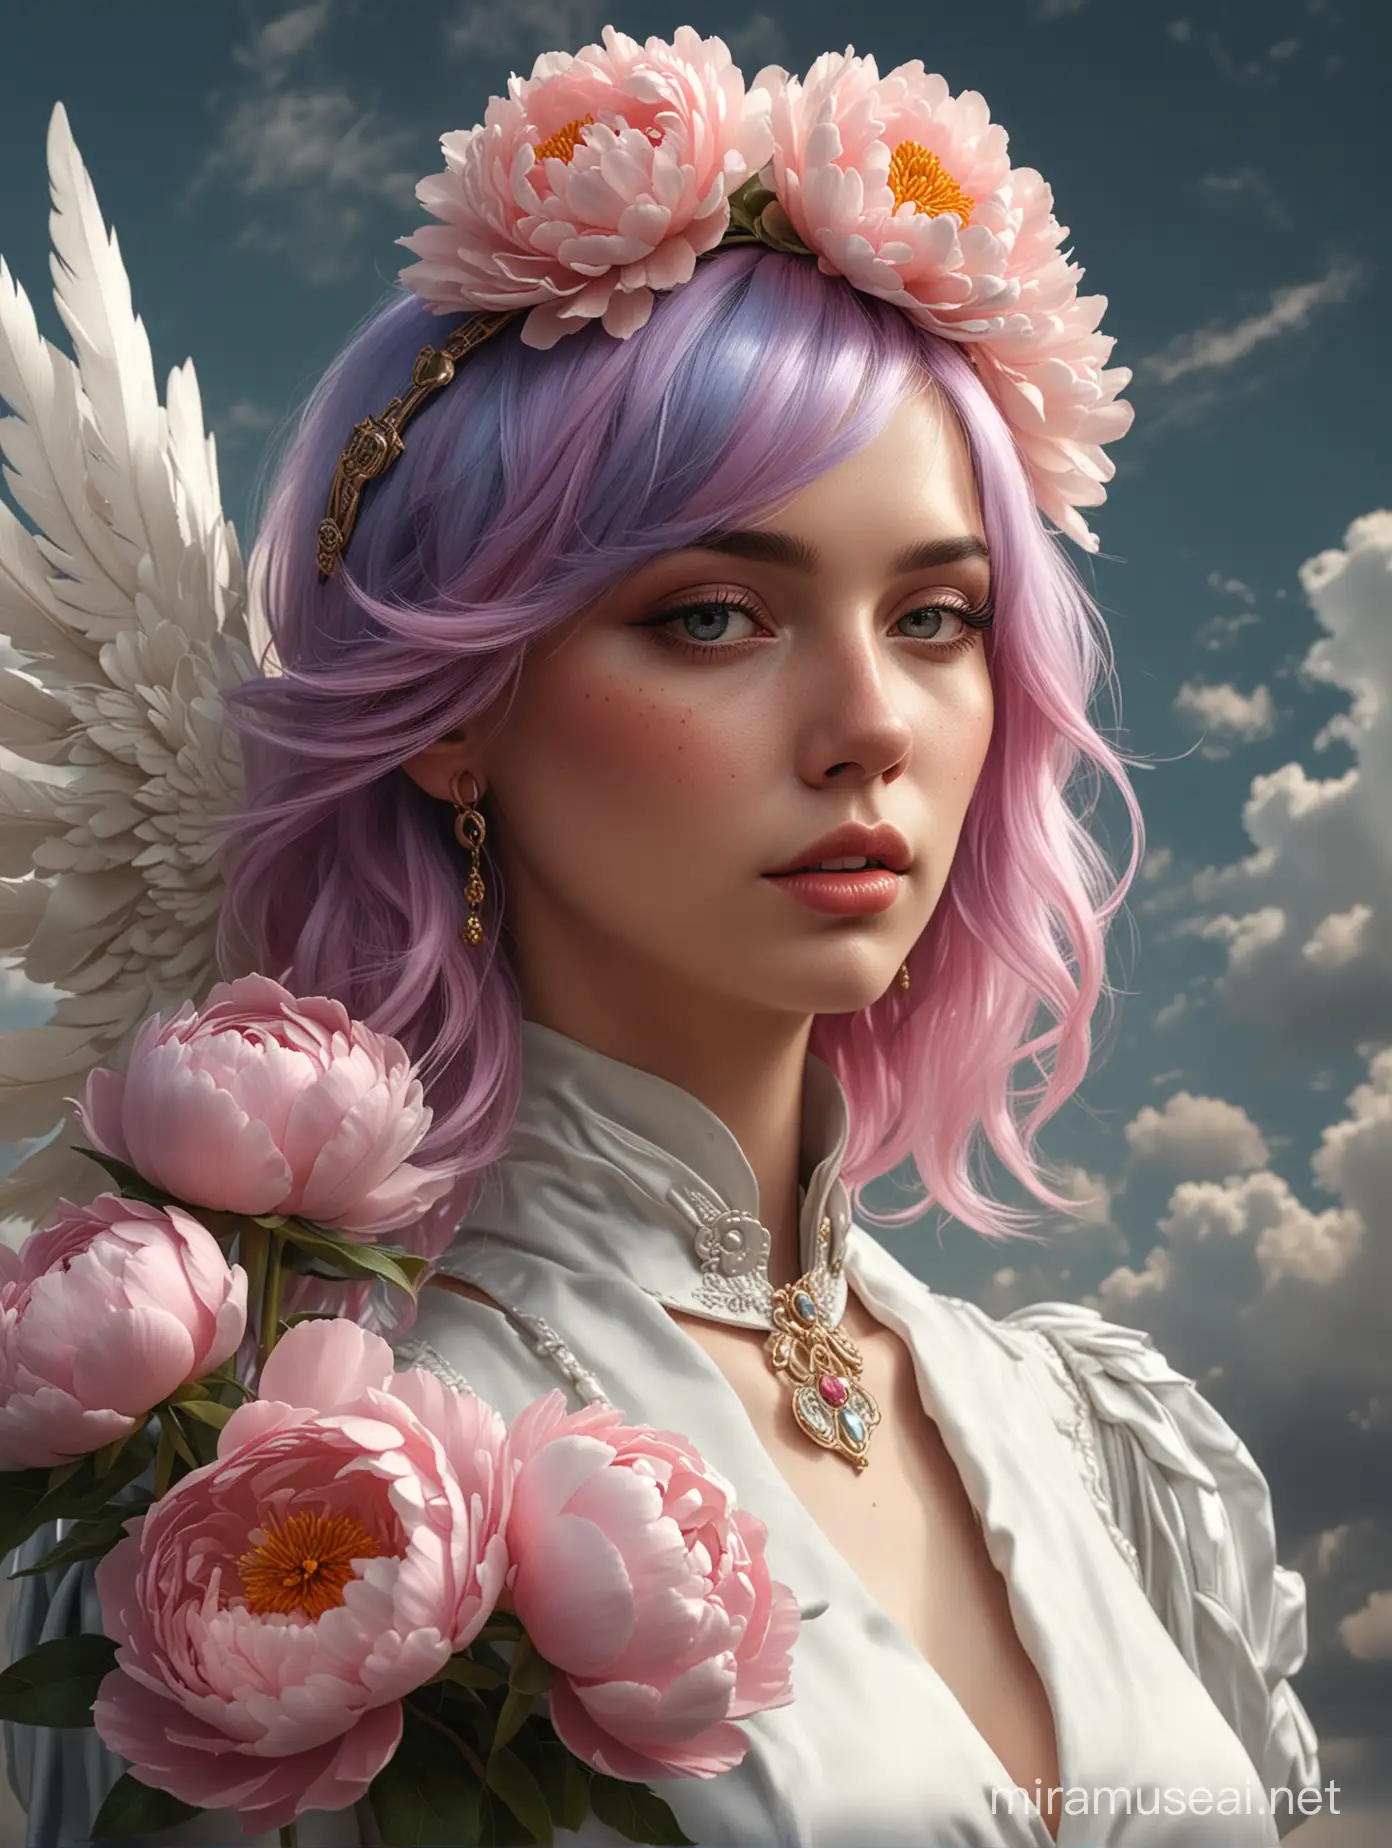 женщина с цветными волосами, одежда Кутюр, драгоценные камни, хлопковые облака, фотореализм, глубокие тени, эстетика, 16k, высокая мода, эпичное, печальное лицо, сюрреалистично, костяной шлем, крылья, в руках цветок пиона